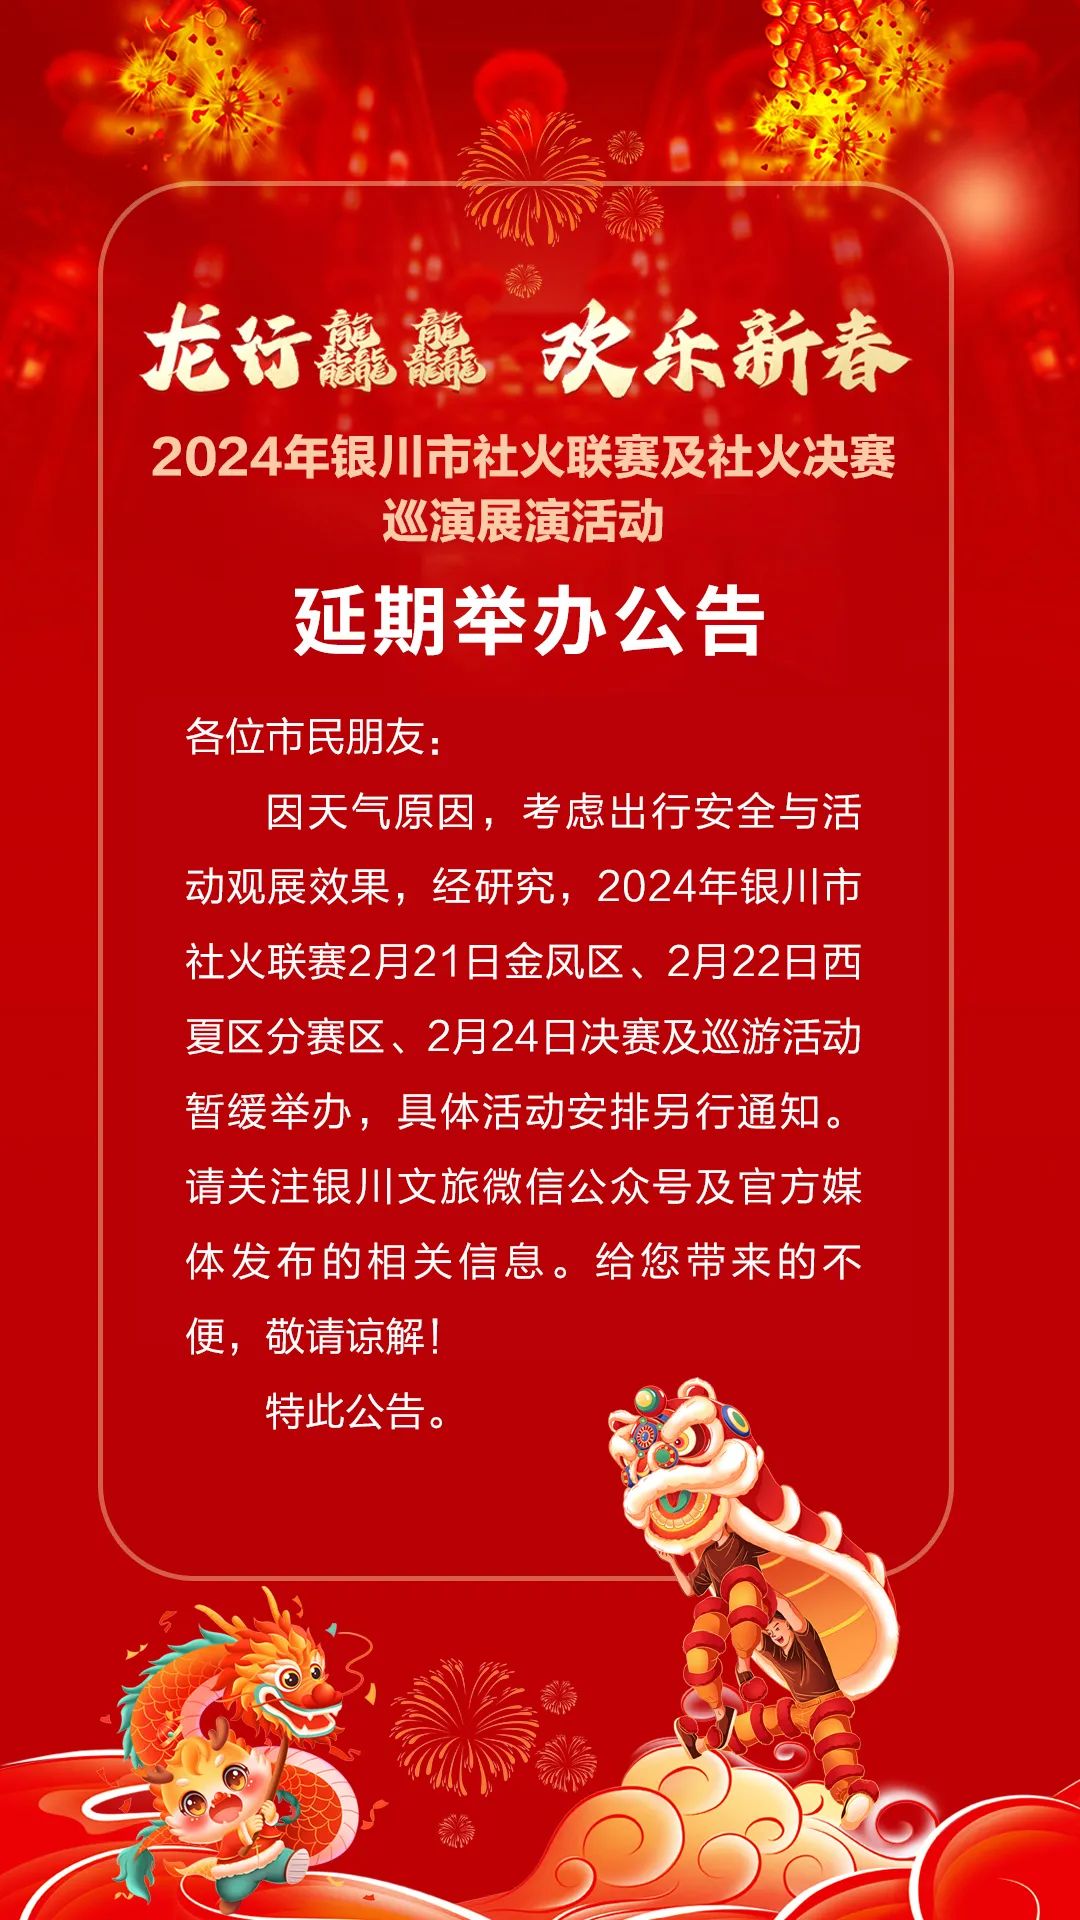 欢乐新春2024年银川市社火联赛及社火决赛巡演展演活动延期举办公告